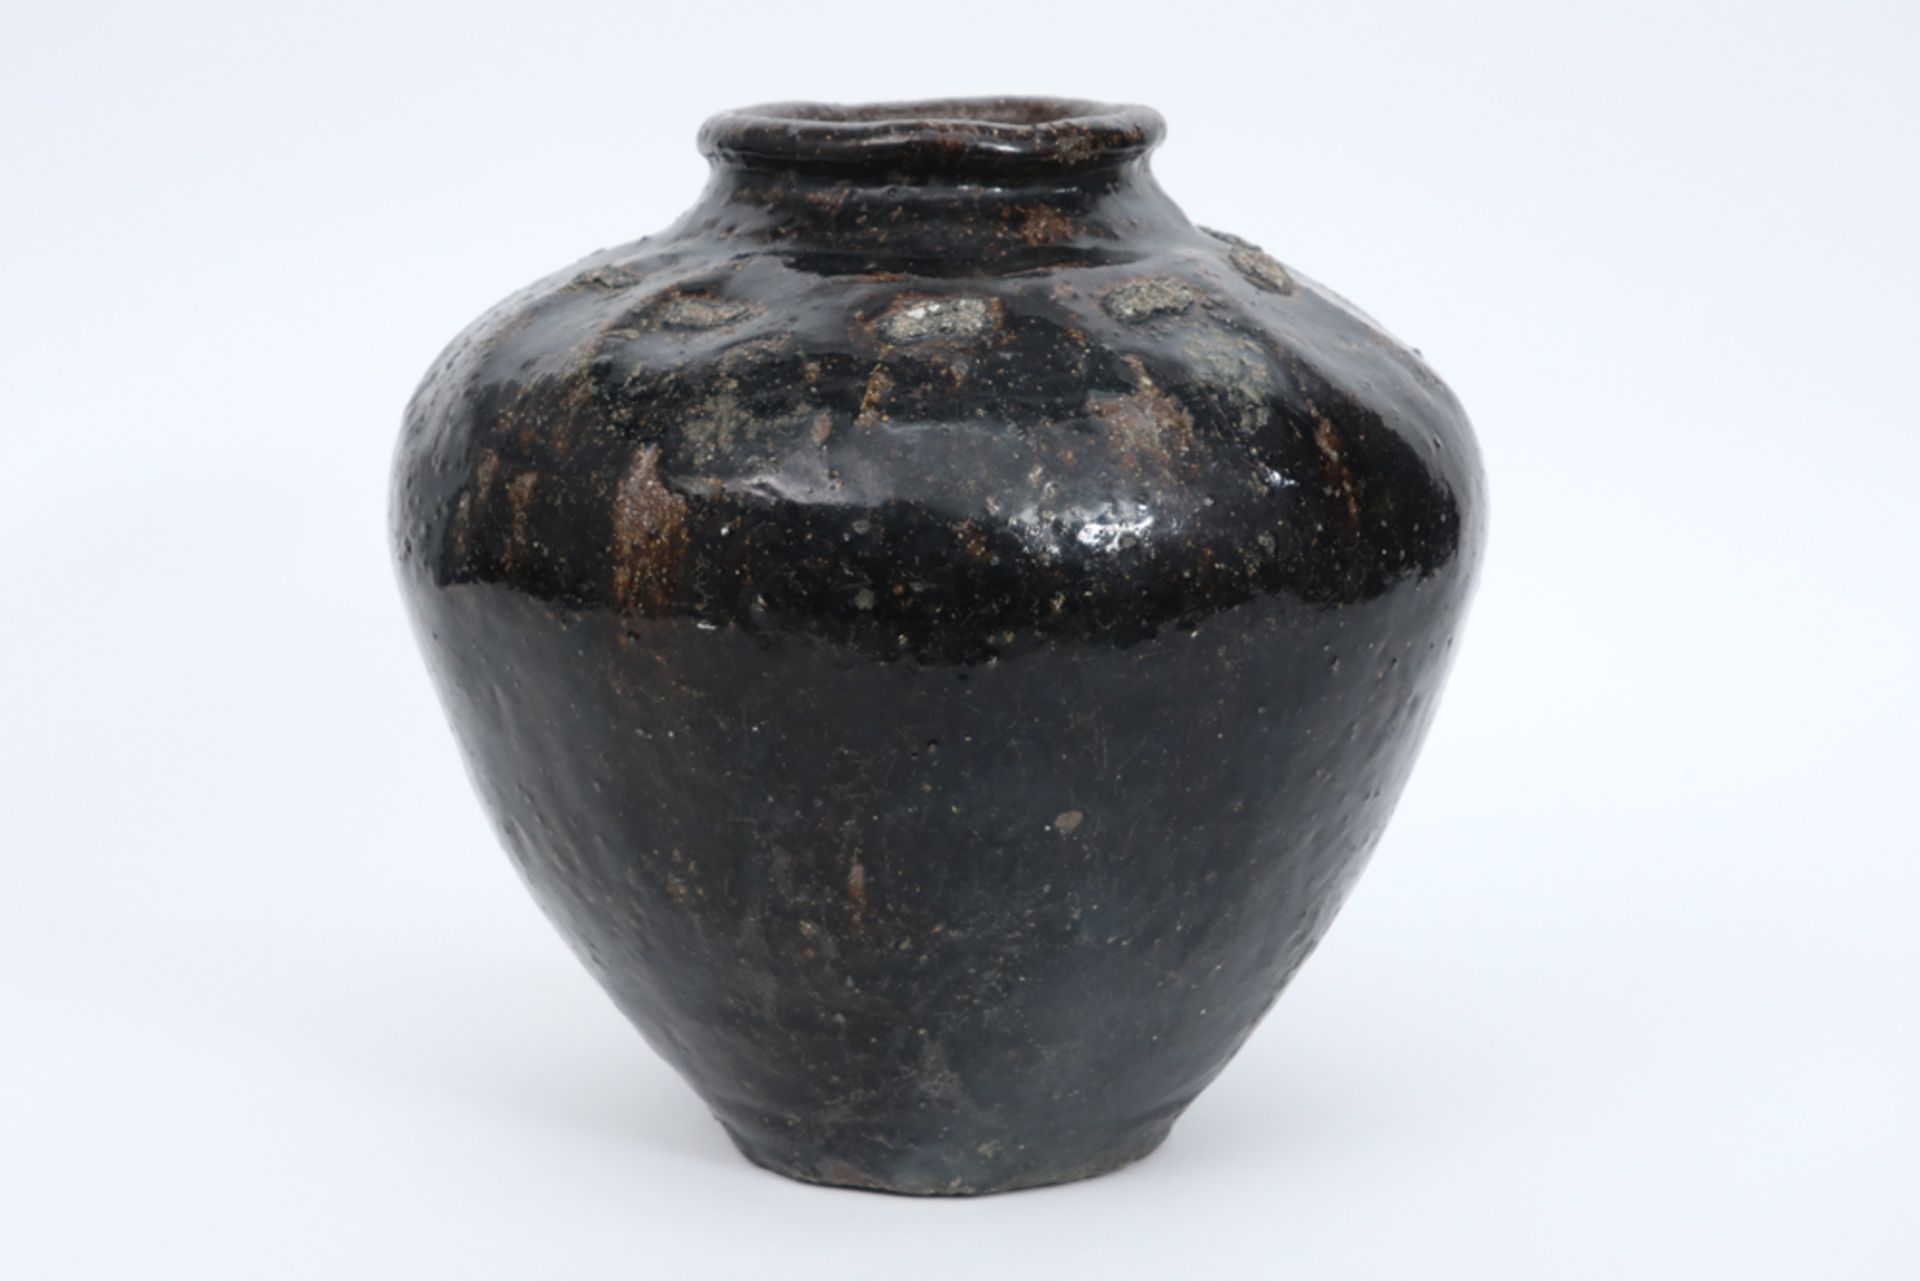 antique oriental urn in glazed earthenware || Antieke Oosterse urne in aardewerk met bruine